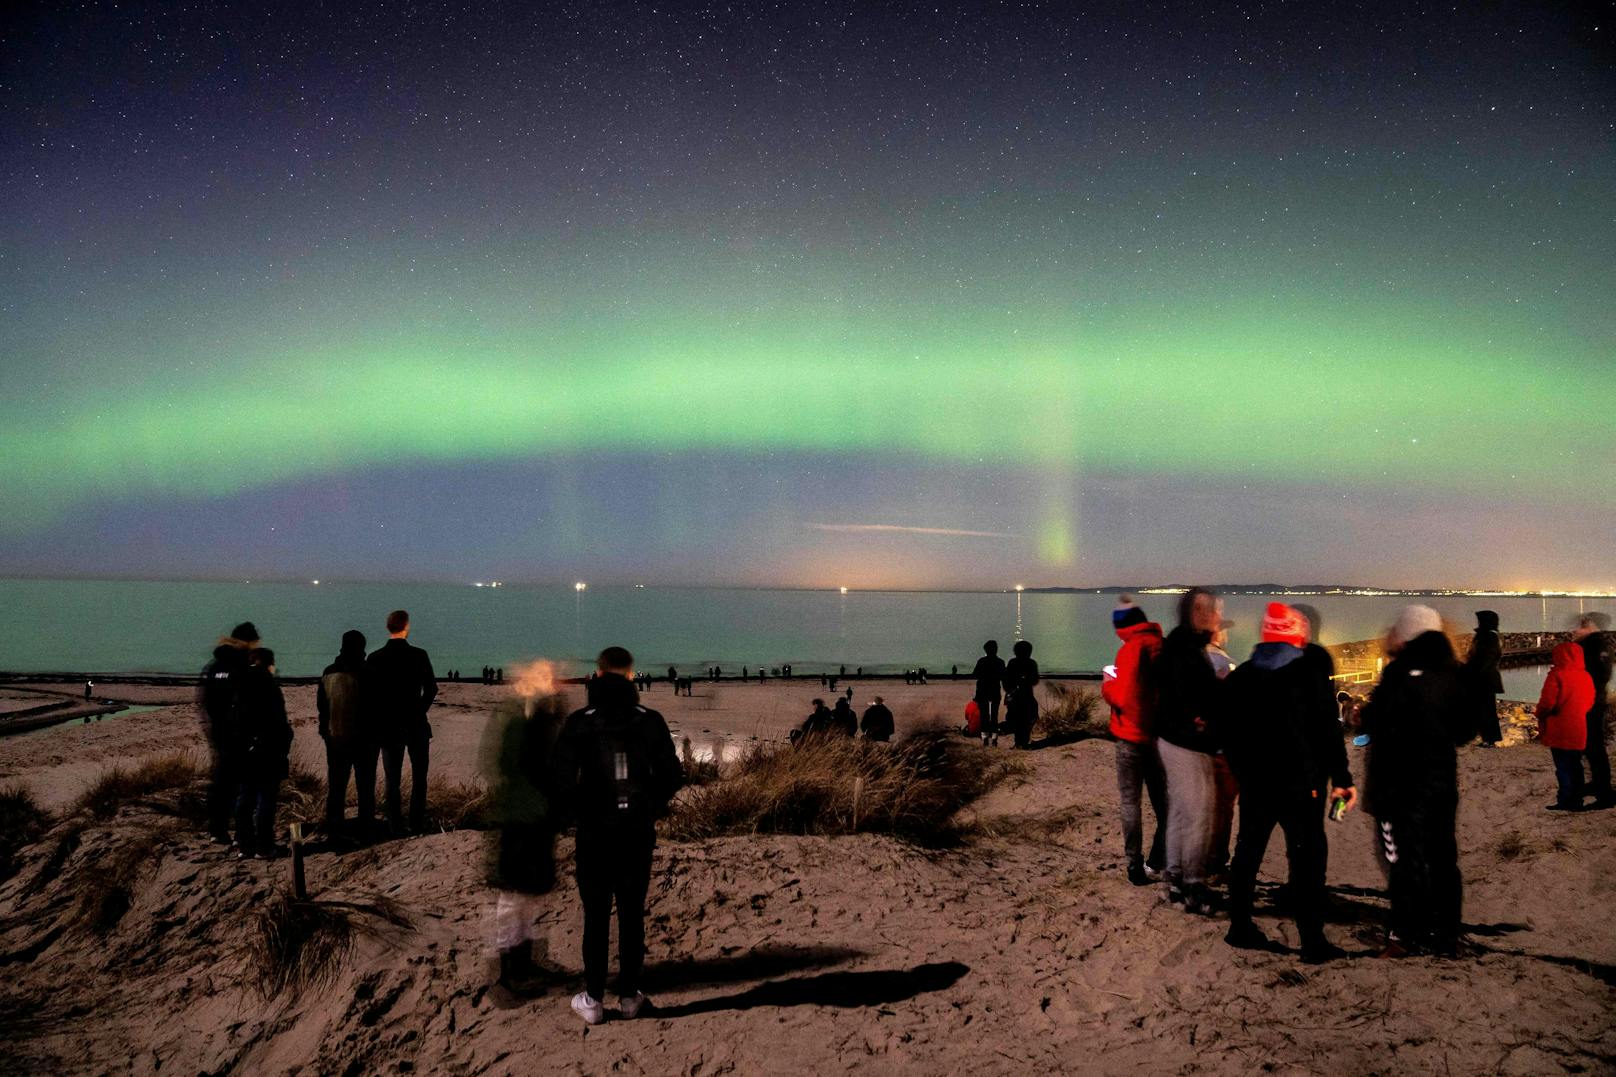 Zahlreiche Schaulustige hatten sich am Strand des Badeortes Hornbæk versammelt, um das ungewöhnliche Nordlicht-Gewitter zu bestaunen.